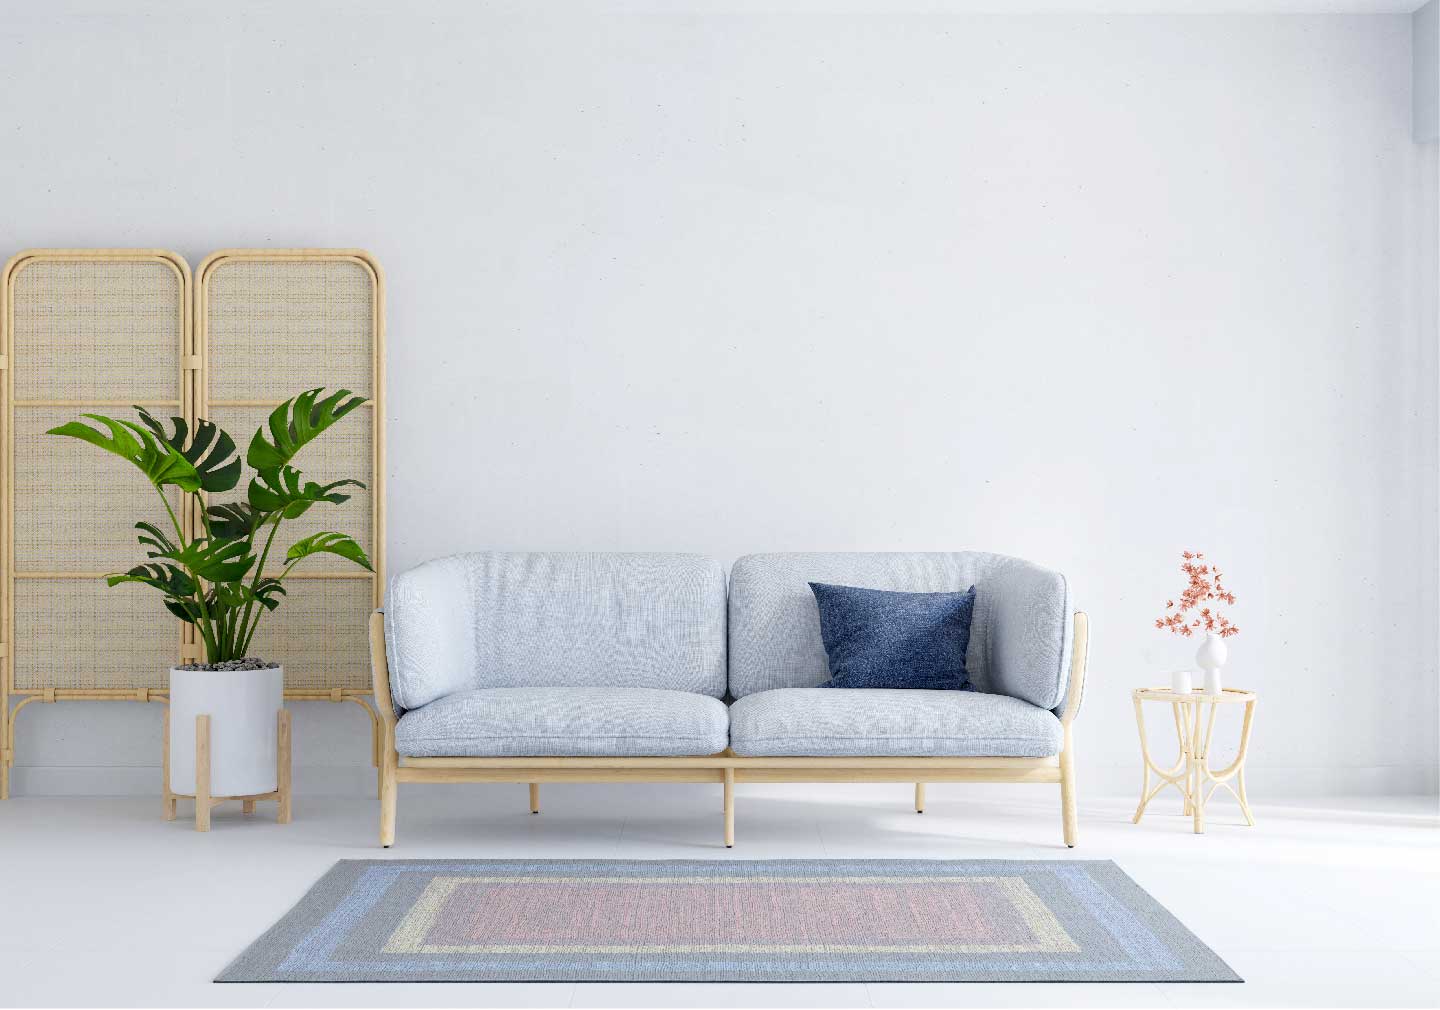 modern living room design 